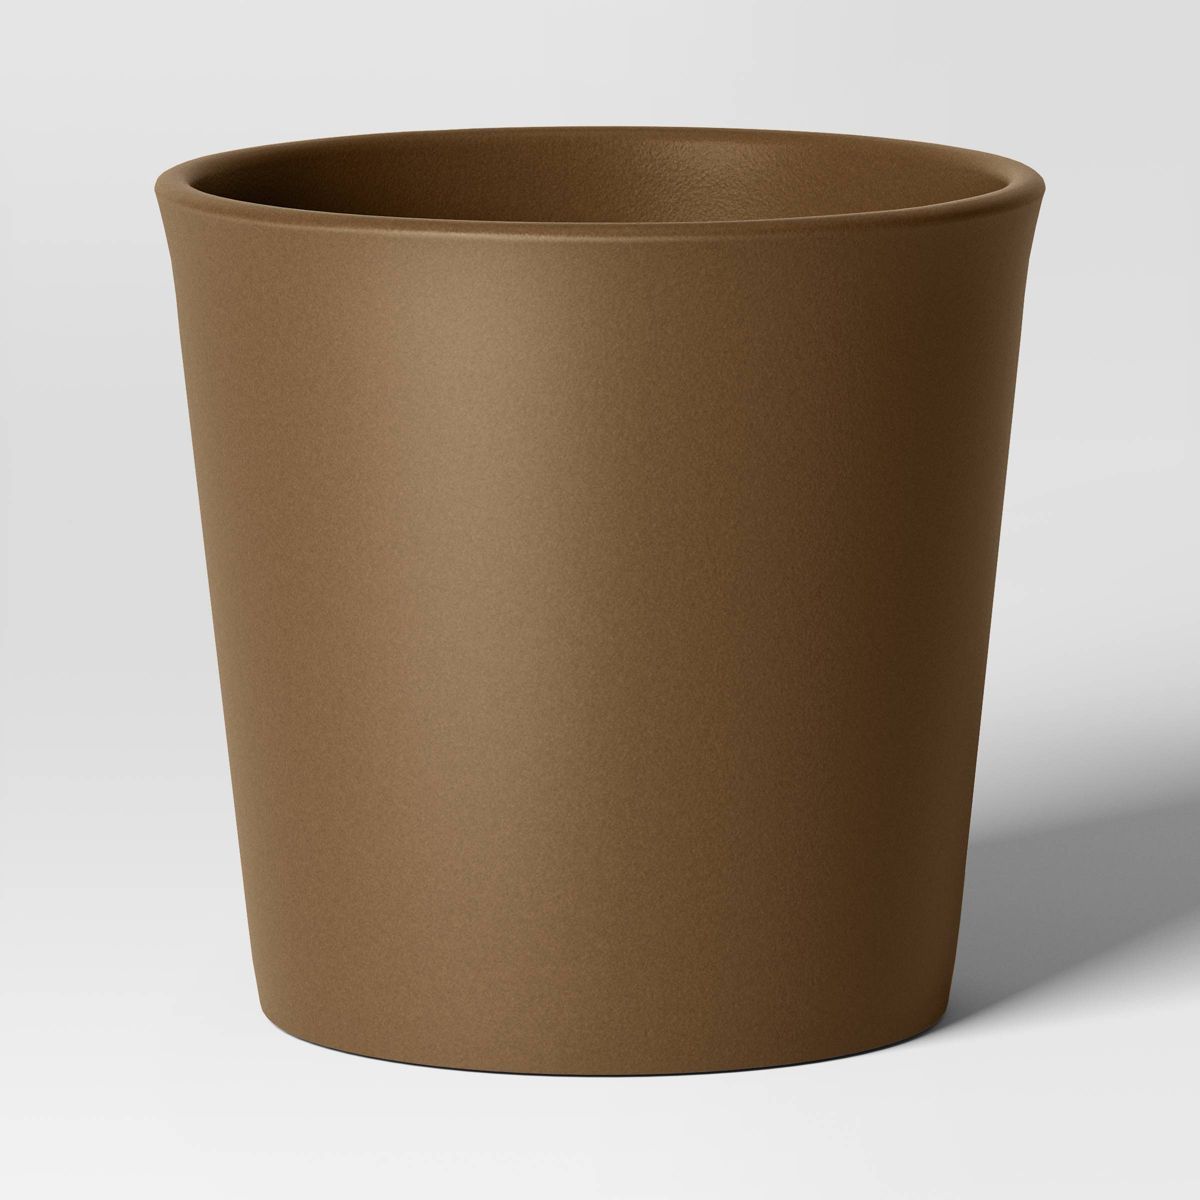 Aesthetic Plastic Indoor Outdoor Planter Pot Nest Brown 10.6"x10.6" - Threshold™ | Target